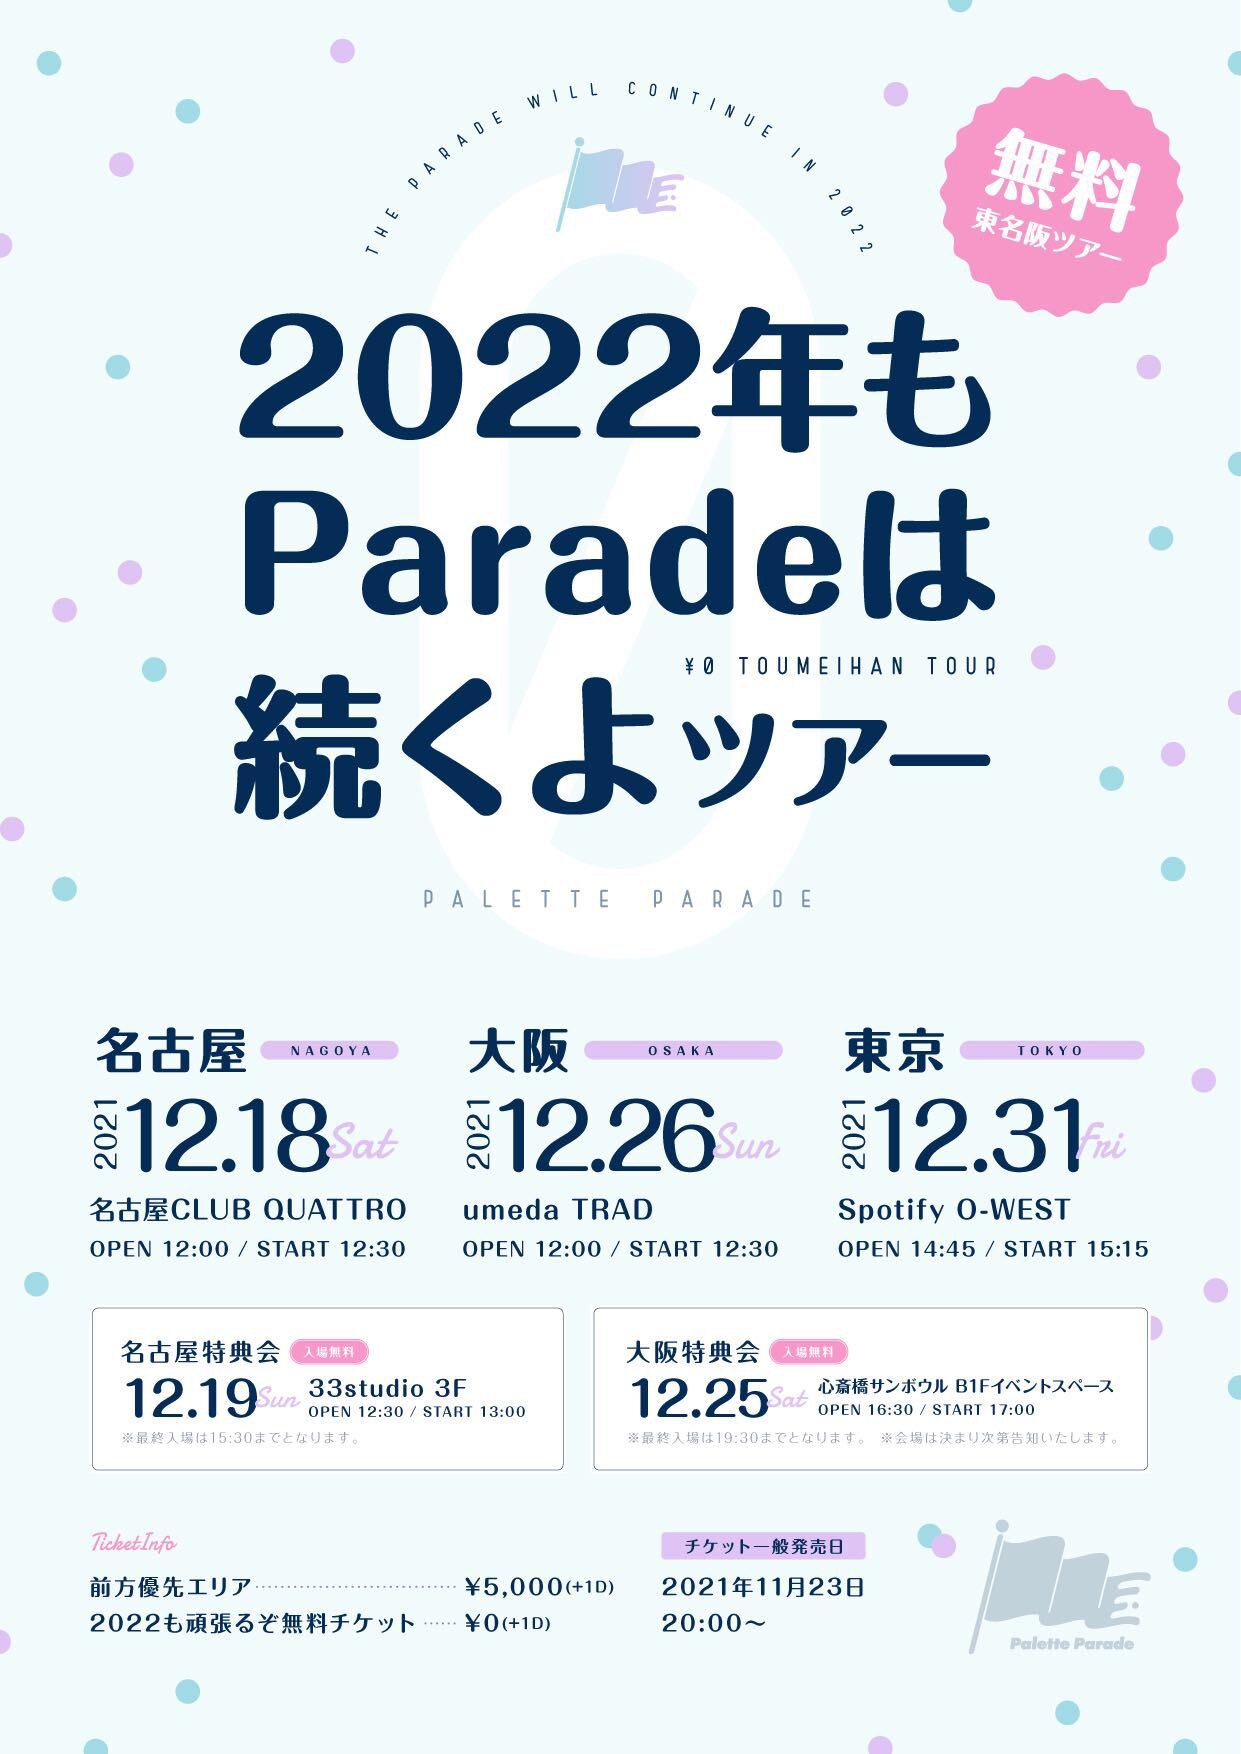 【名古屋】2022年もParadeは続くよツアー